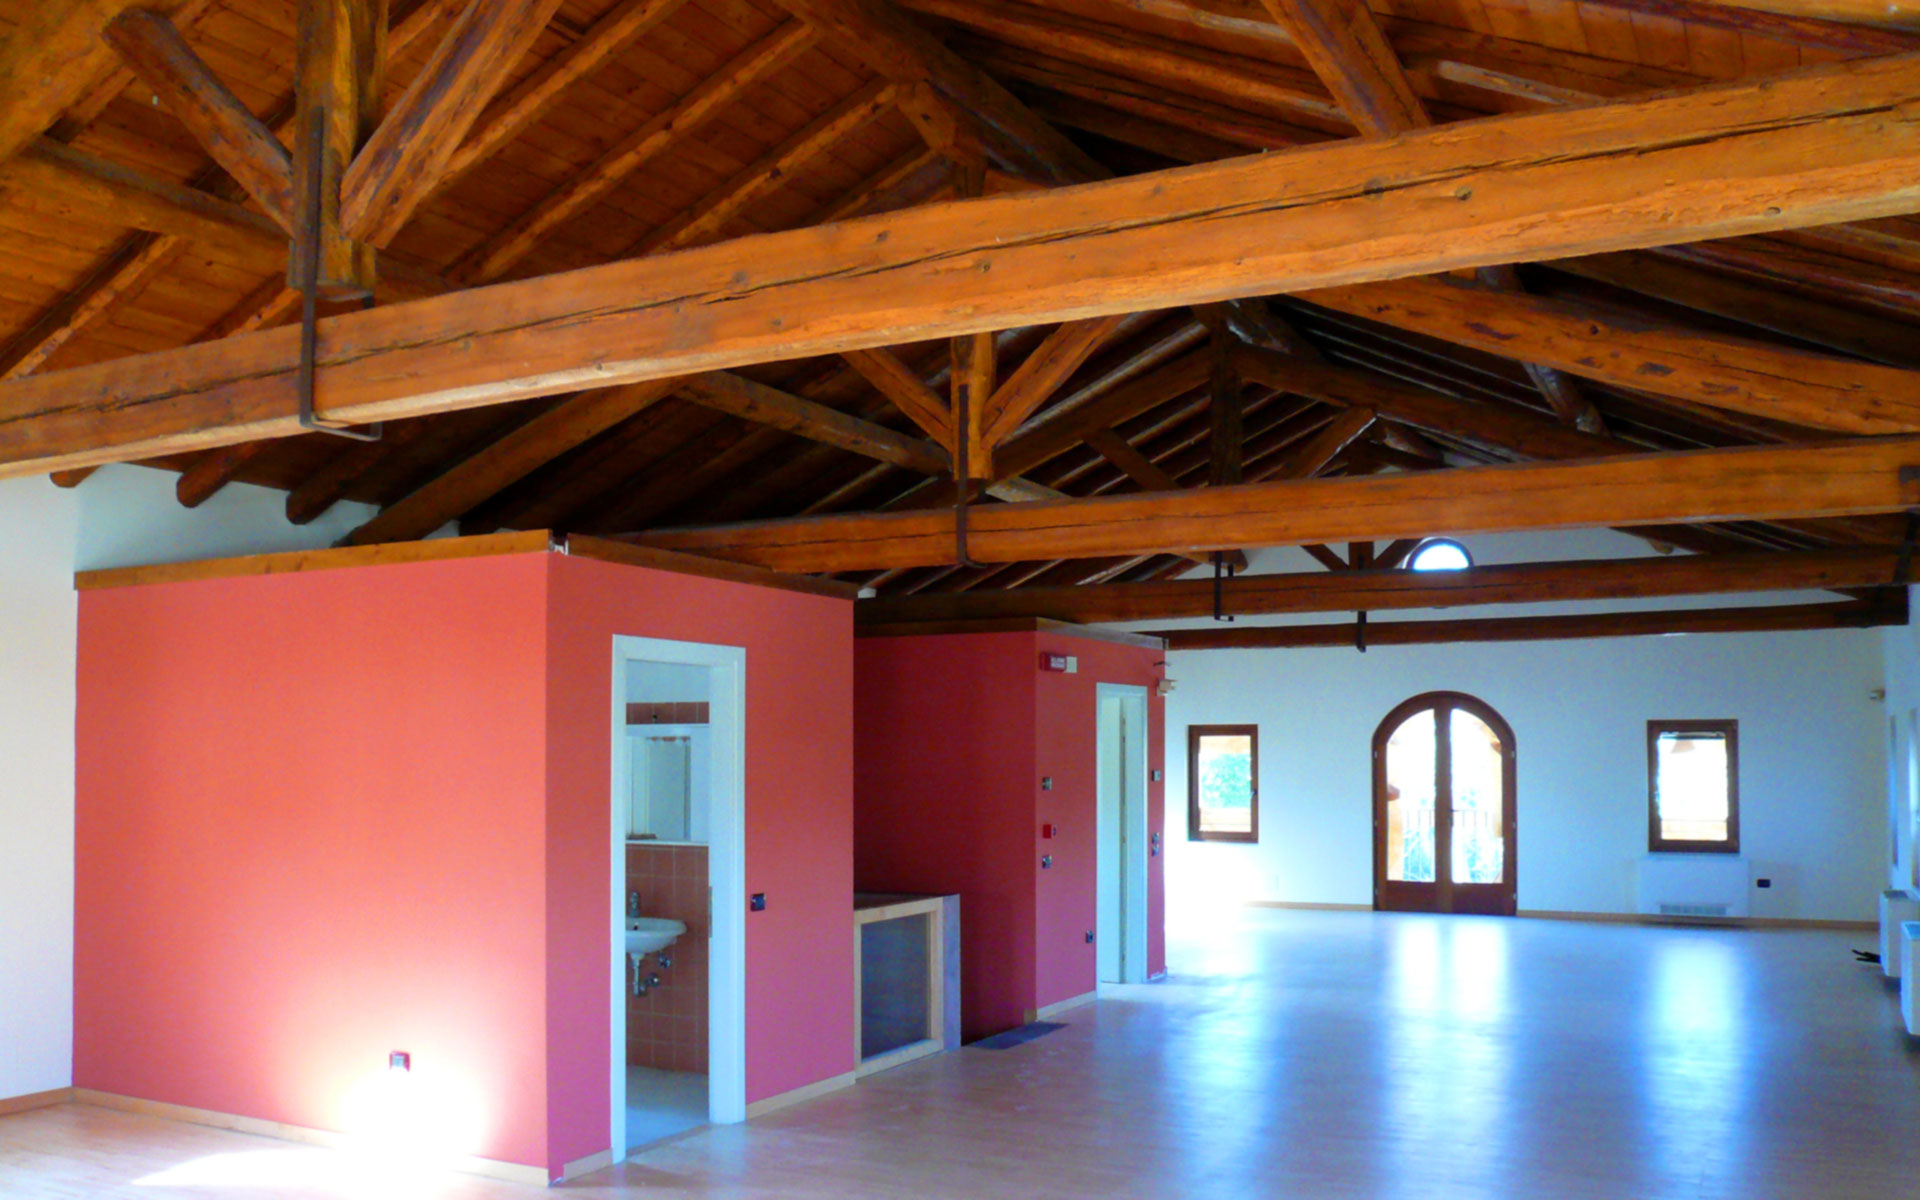 Casa condominiale bressa - Treviso - Realizzazioni - Globarch BioArchitettura - Architetto Ermenegildo Anoja